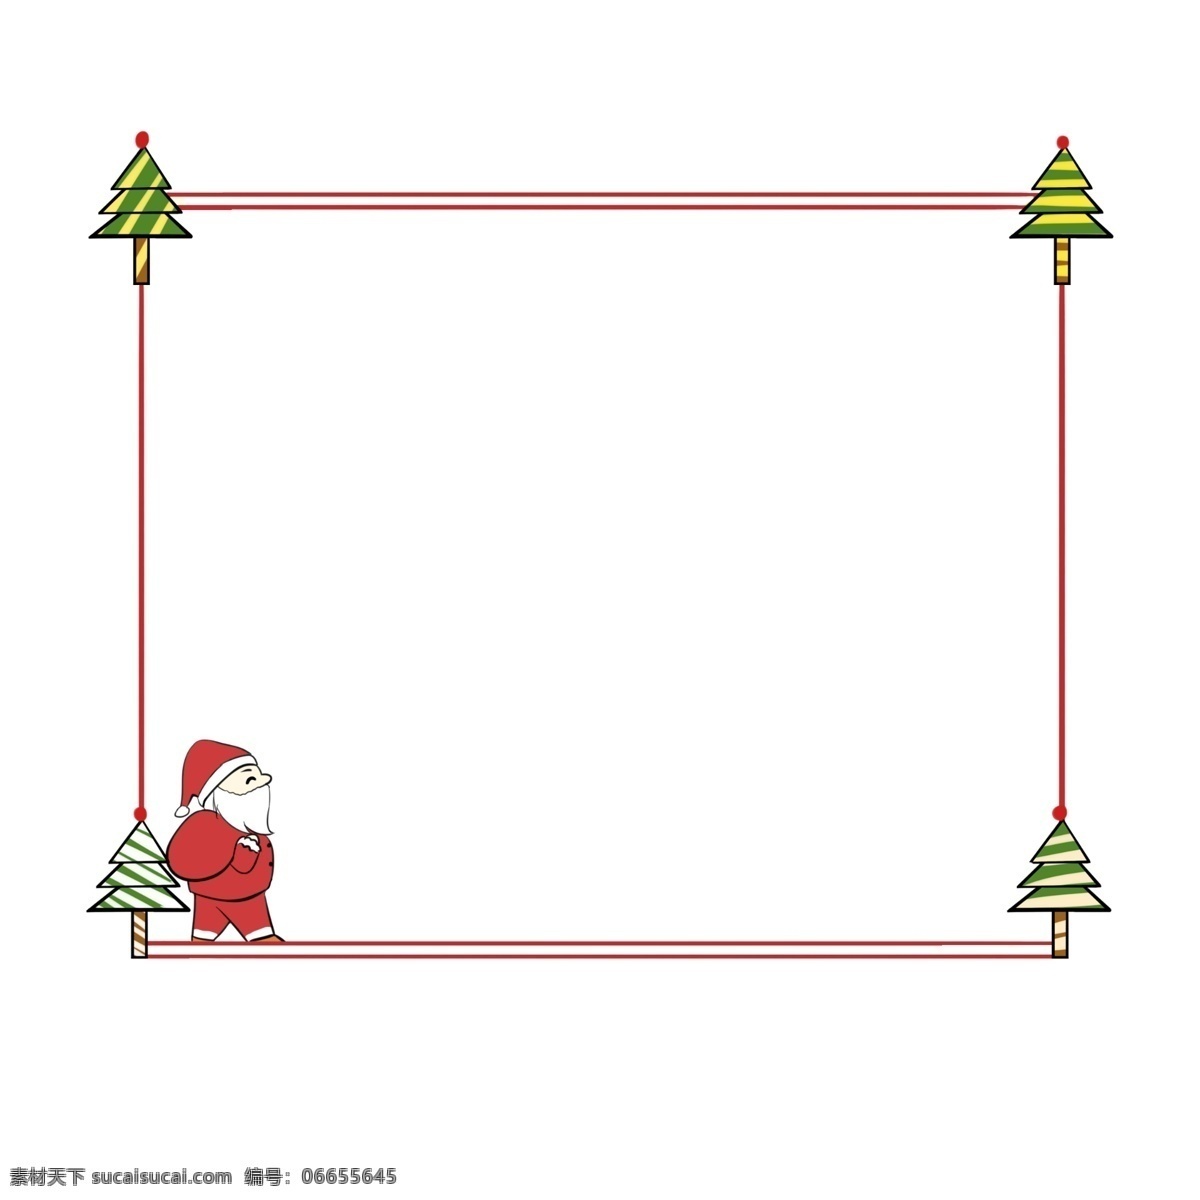 圣诞节 圣诞老人 圣诞树 边框 圣诞节边框 手绘边框 红色的边框 绿色的圣诞树 唯美边框 边框插画